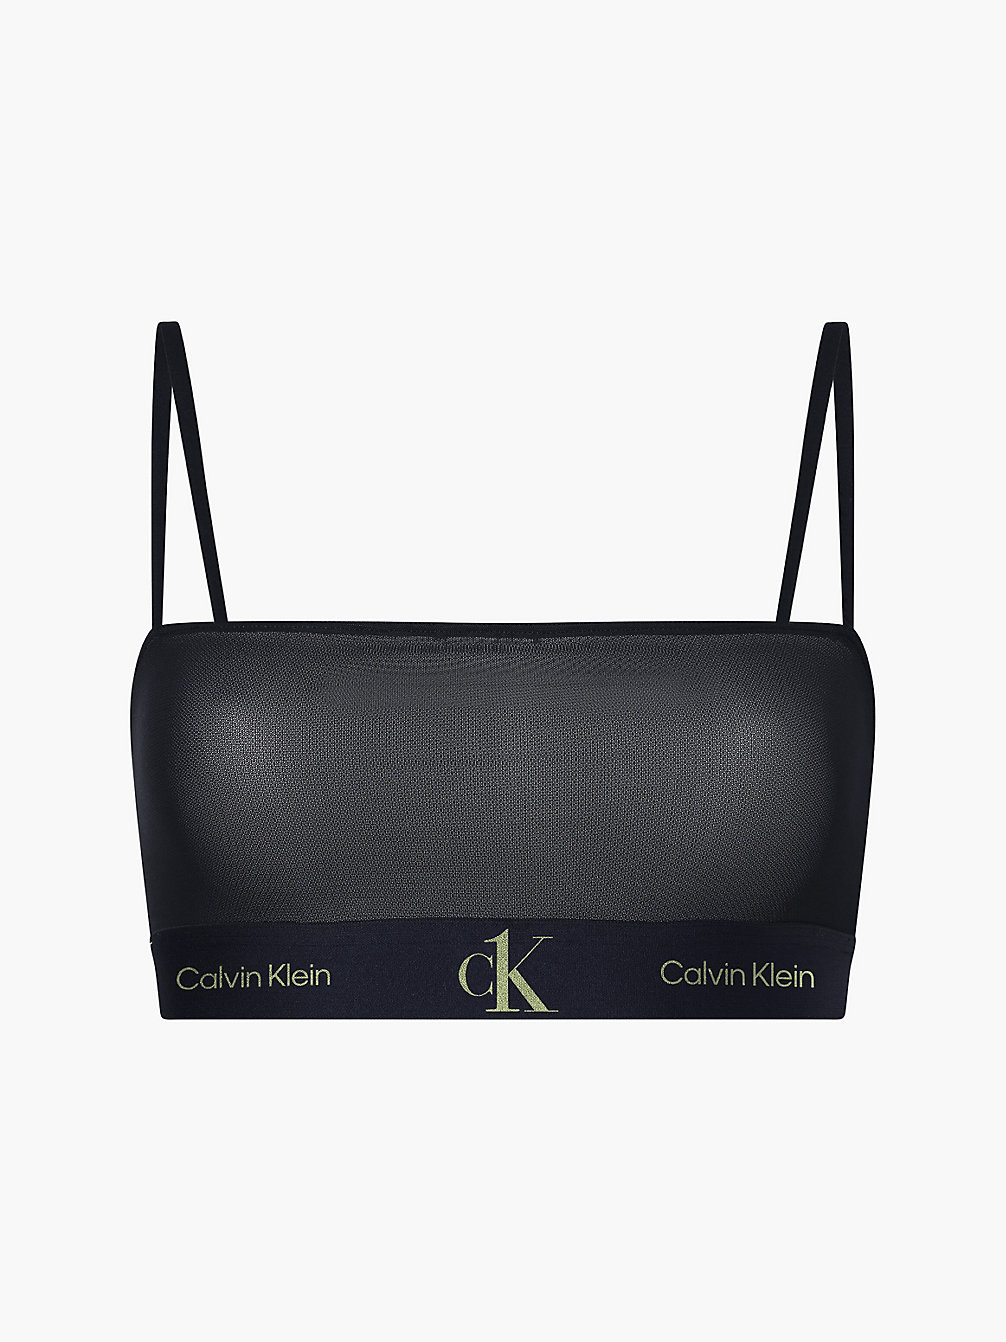 BLACK Bandeau-Bralette – CK One undefined Damen Calvin Klein